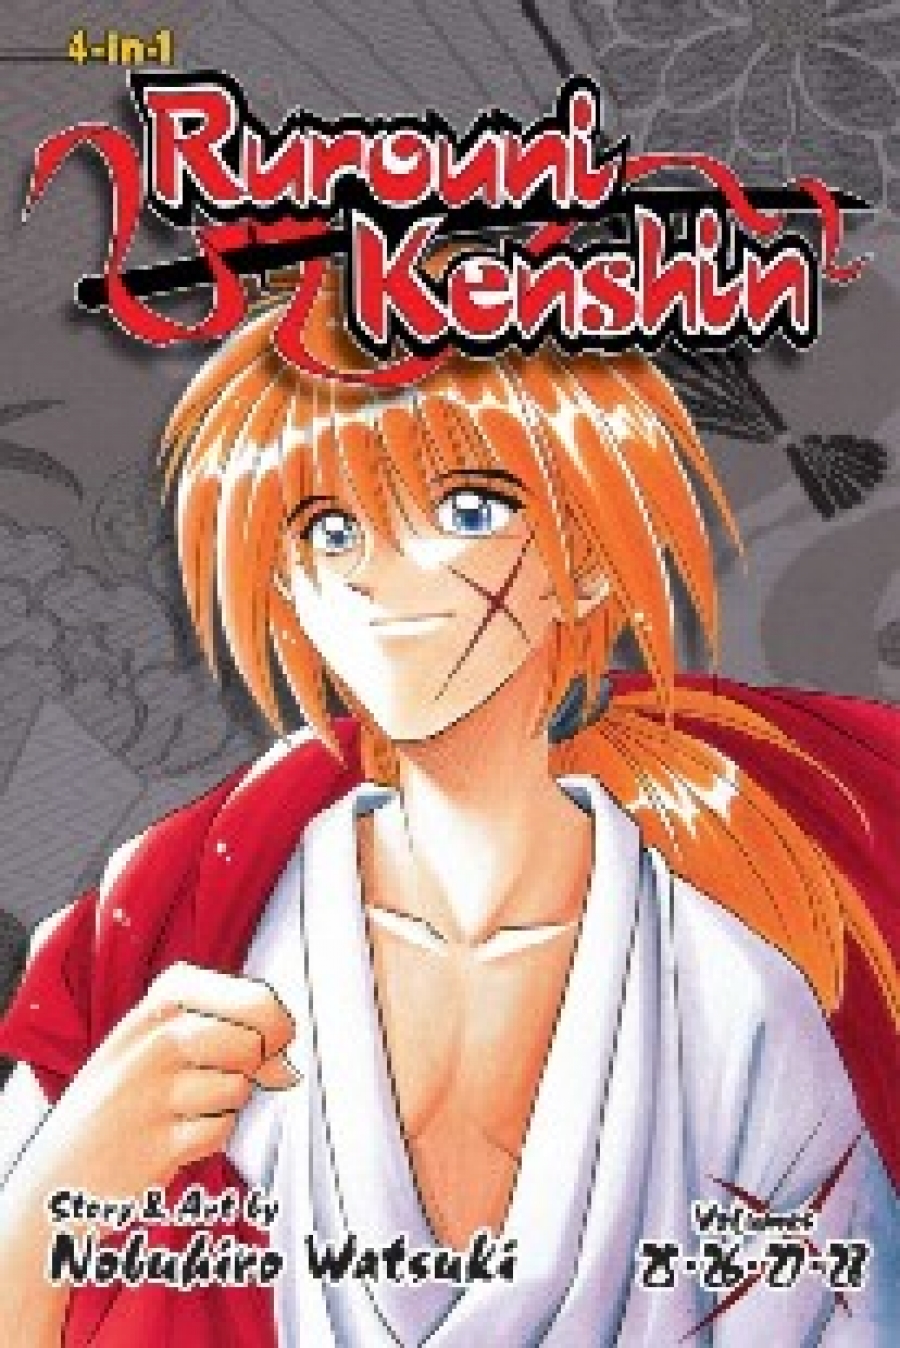 Watsuki Nobuhiro Rurouni Kenshin (4-In-1 Edition), Vol. 9: Includes Vols. 25, 26, 27 & 28 